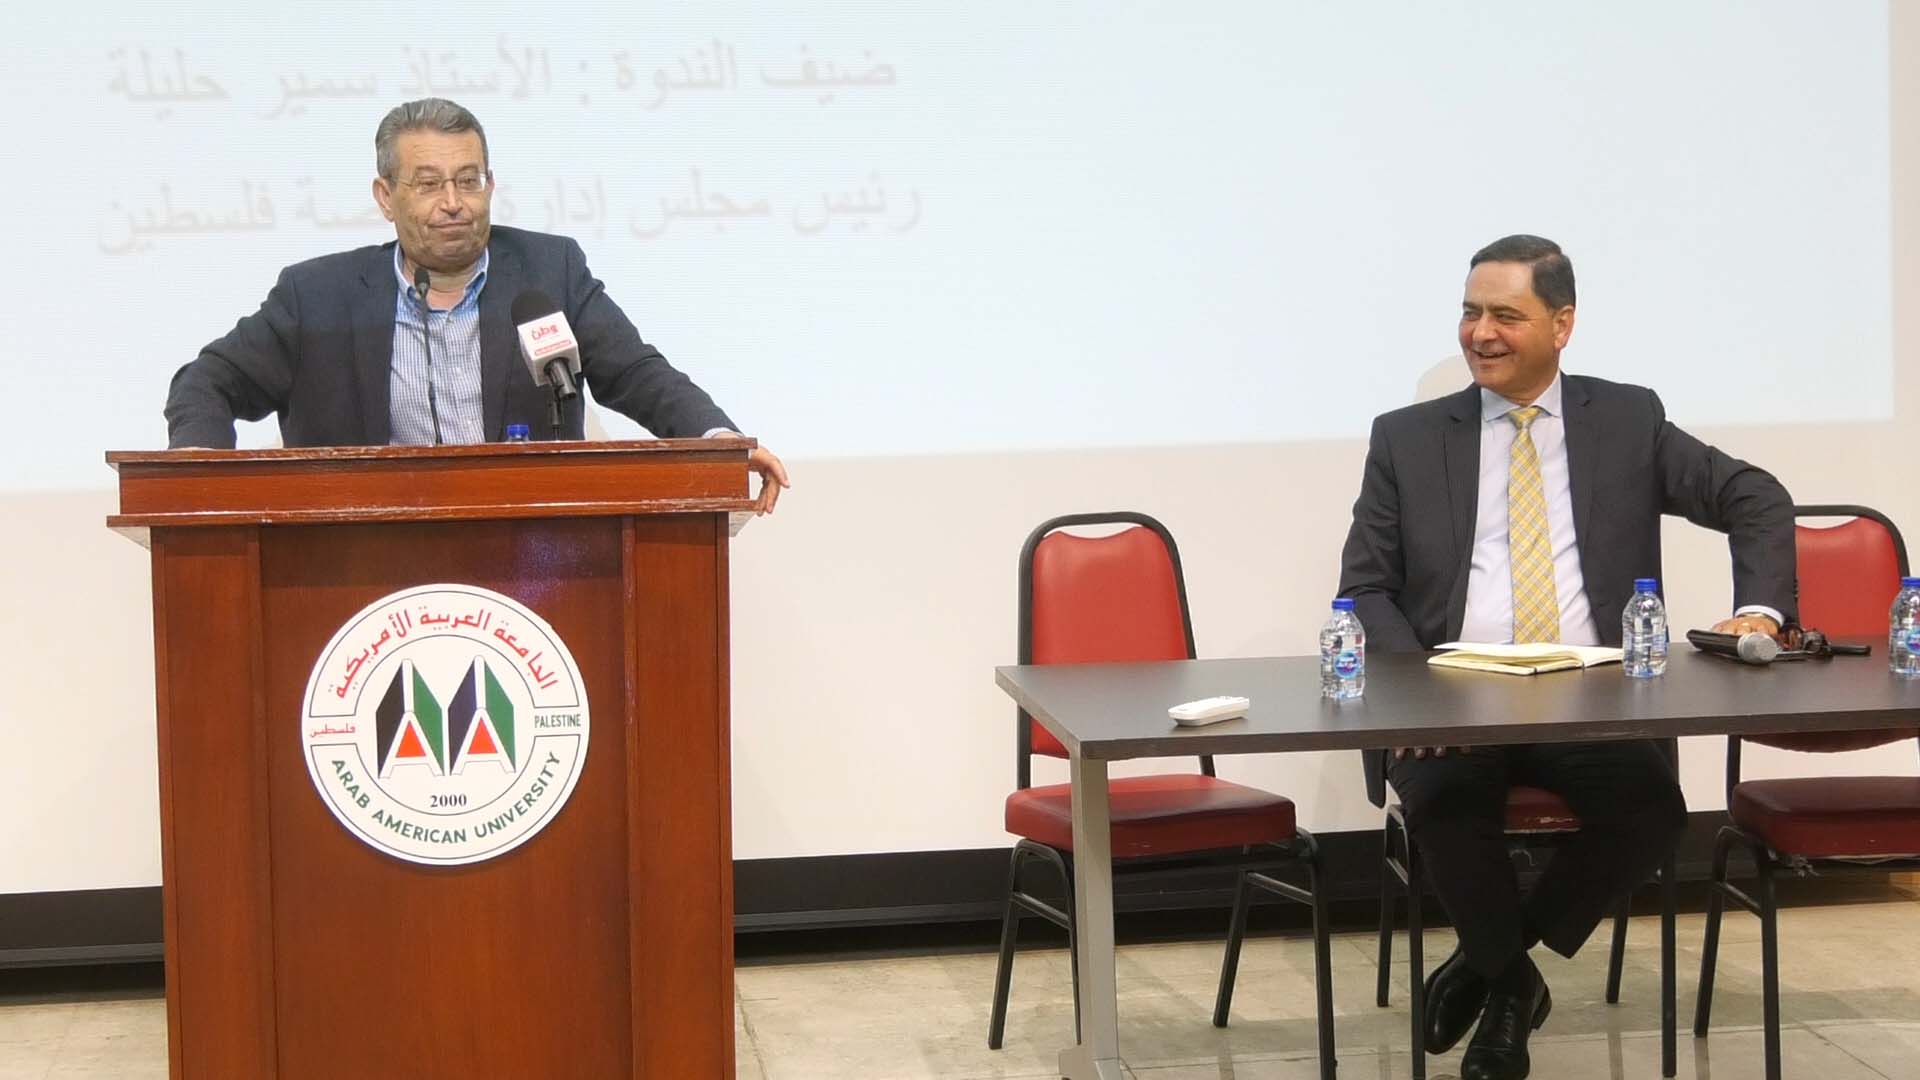 الجامعة العربية الأمريكية تستضيف رئيس مجلس إدارة بورصة فلسطين في ندوة بعنوان "بورصة فلسطين: وآفاق التطوير"